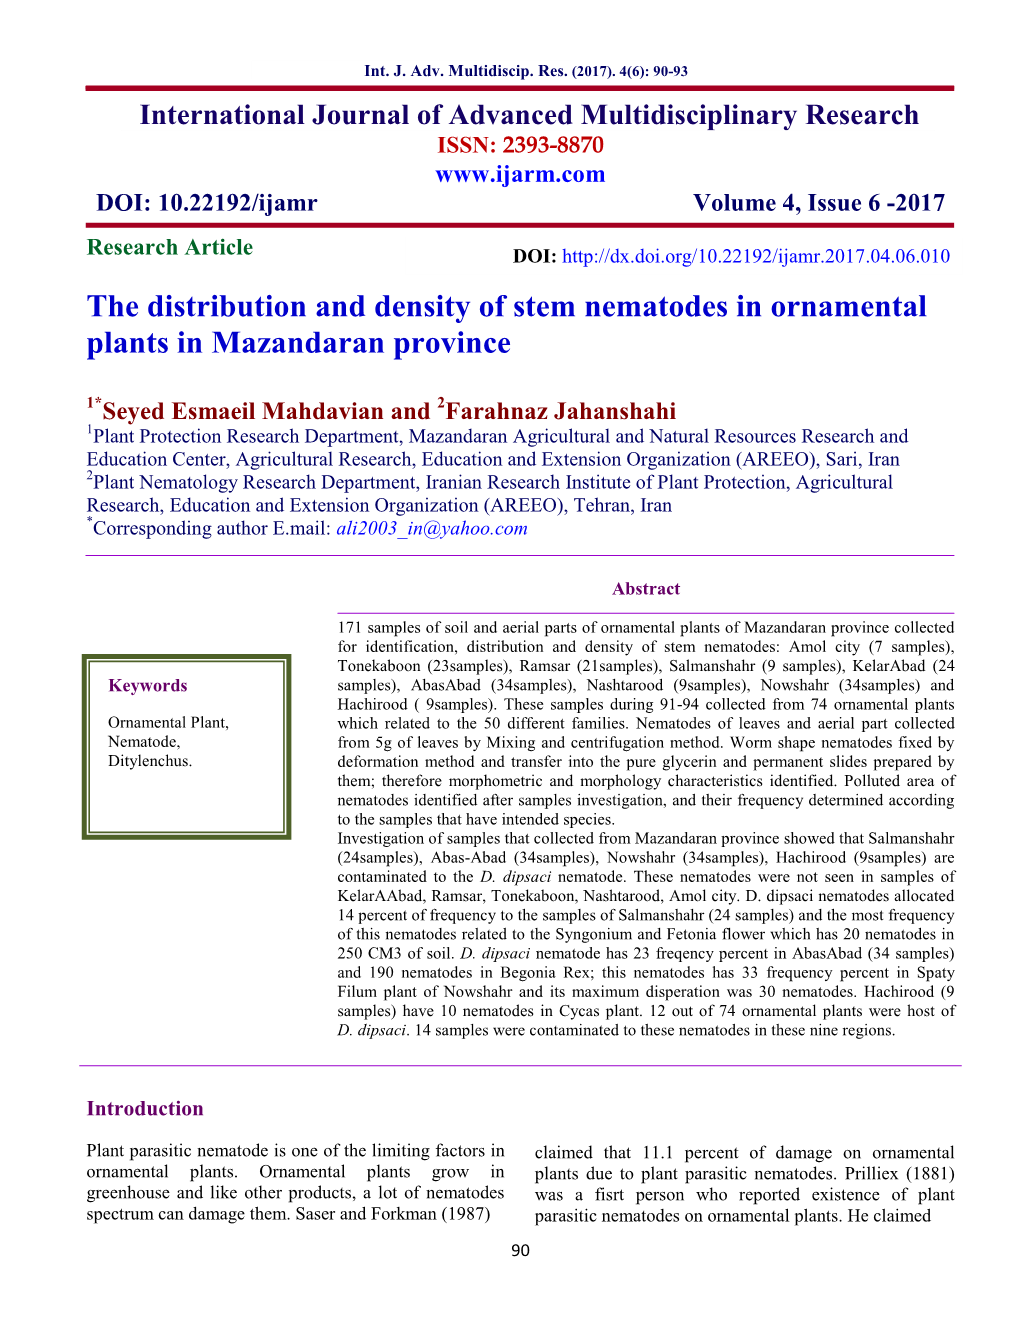 The Distribution and Density of Stem Nematodes in Ornamental Plants in Mazandaran Province